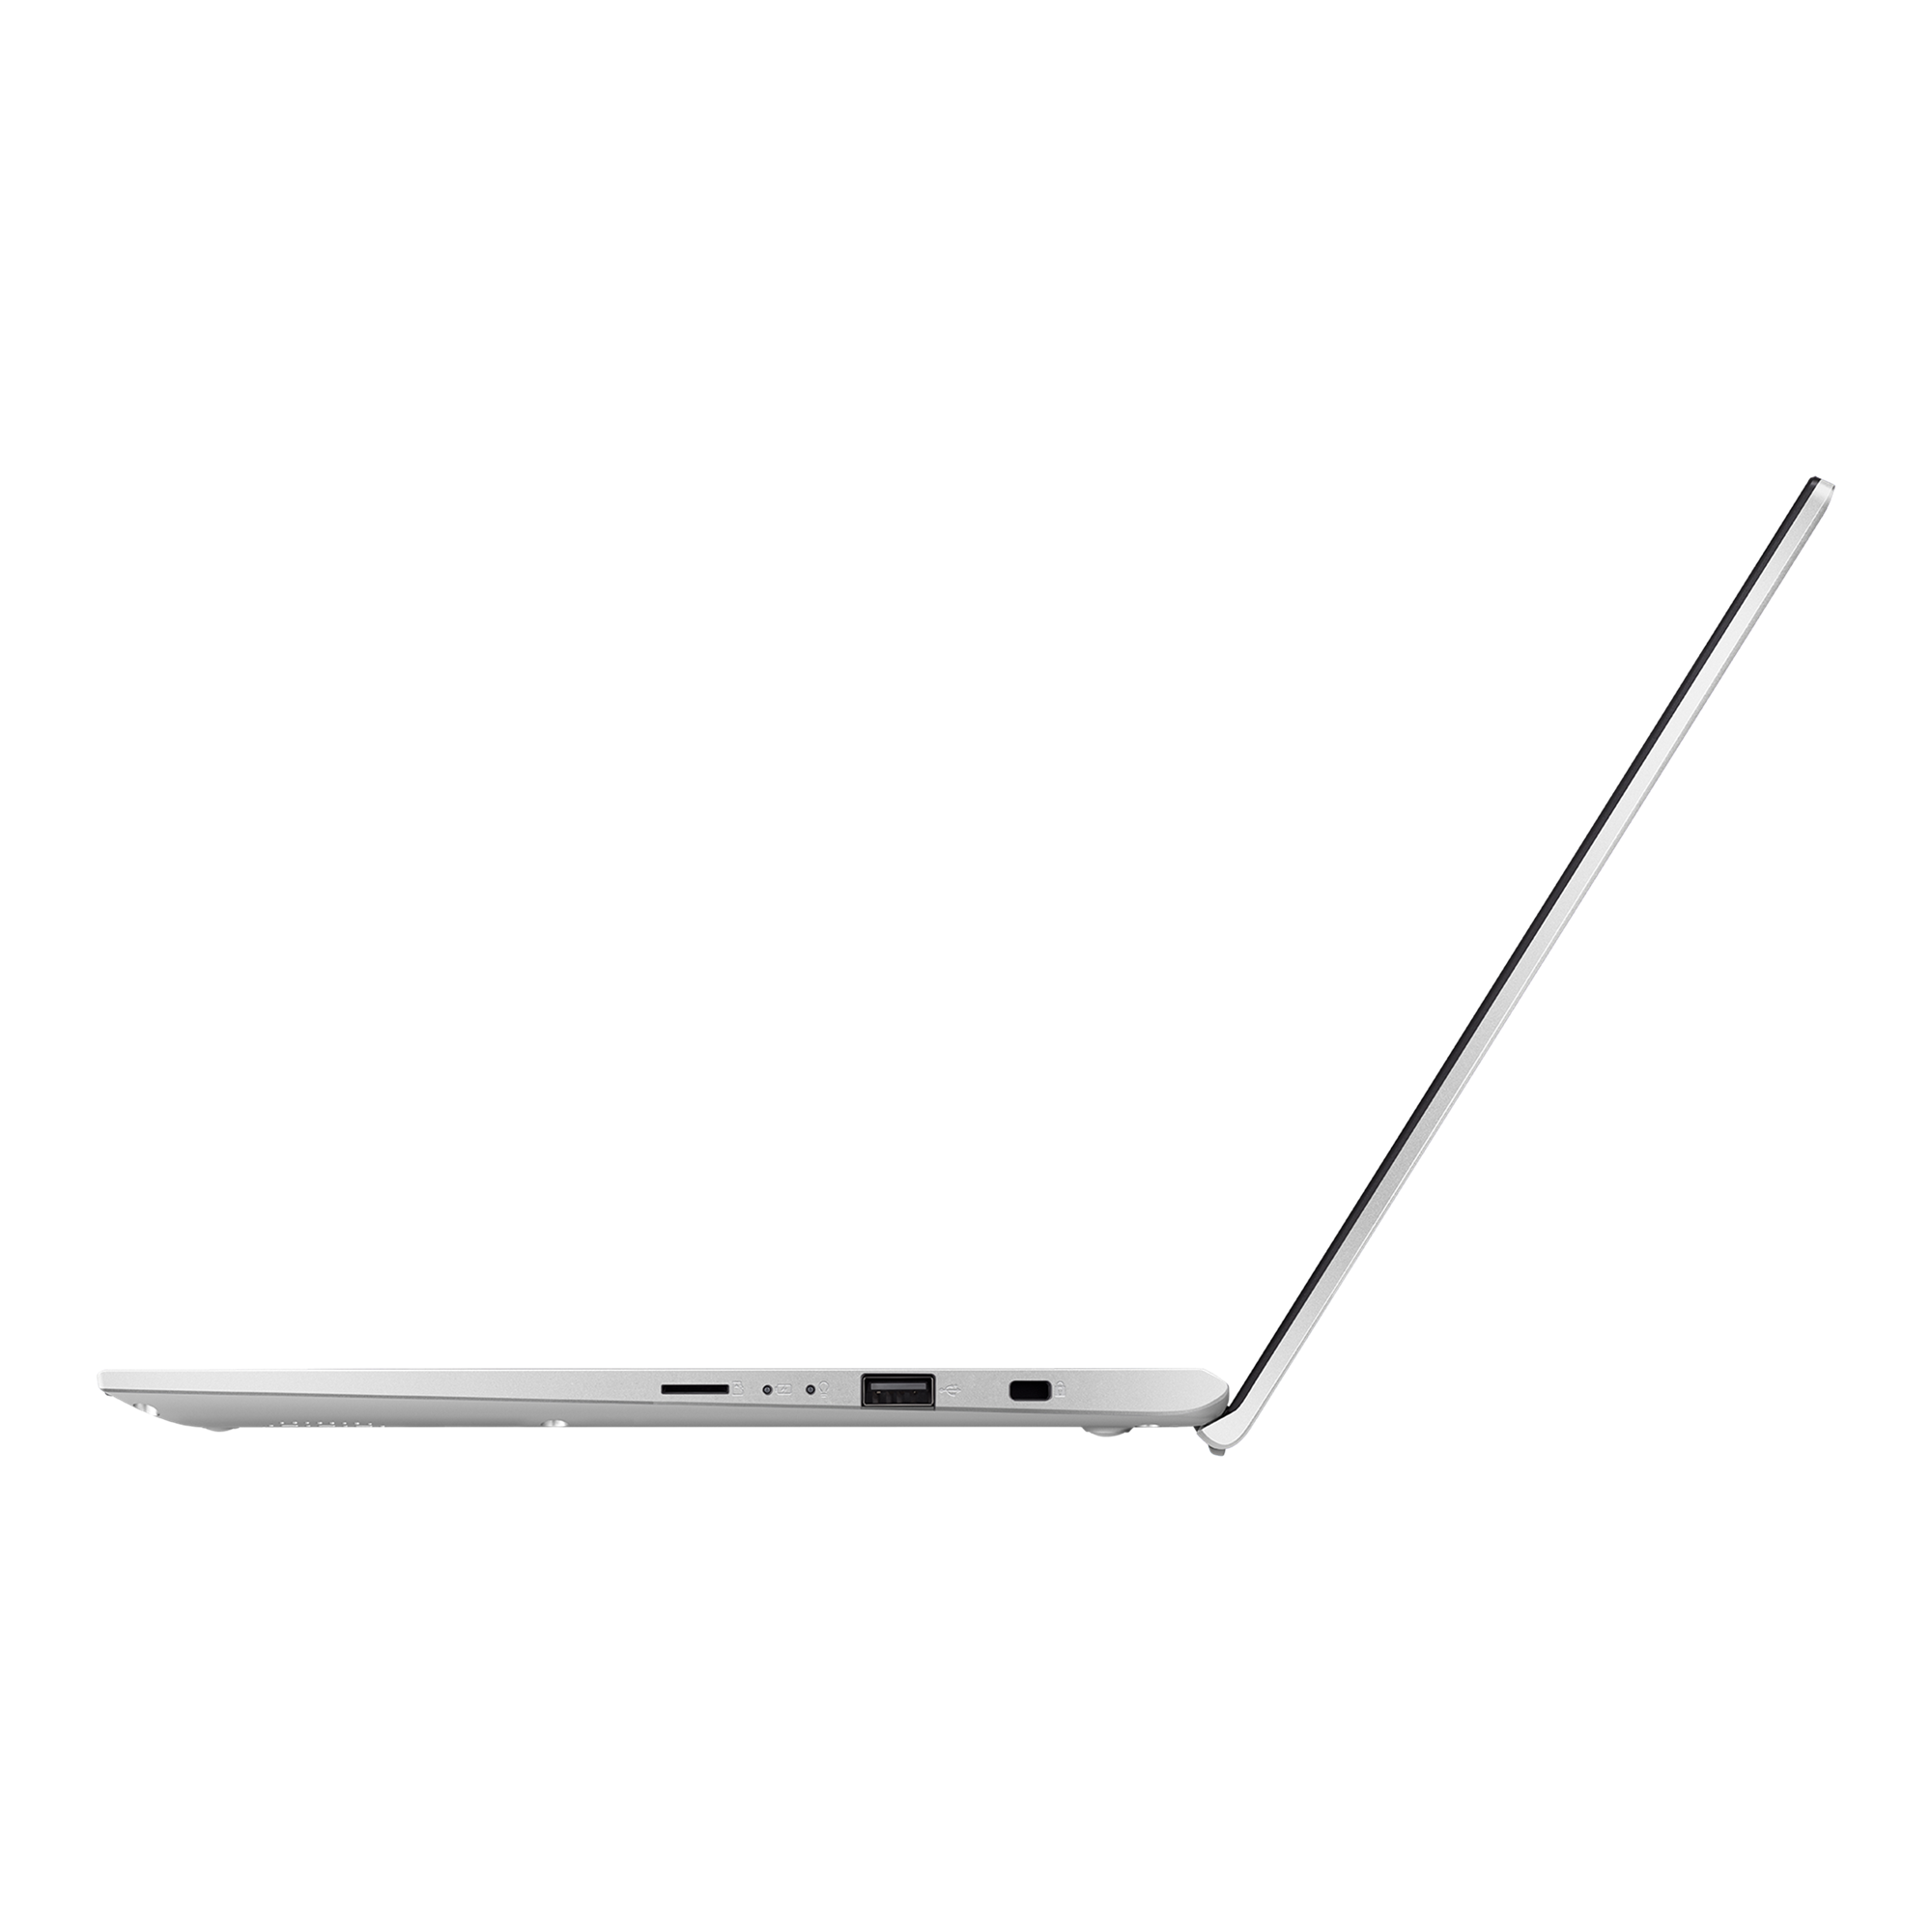 Laptop💻ASUS VivoBook 14 X412F, Unboxing📦Review, Características, Información ⌨️🖱️